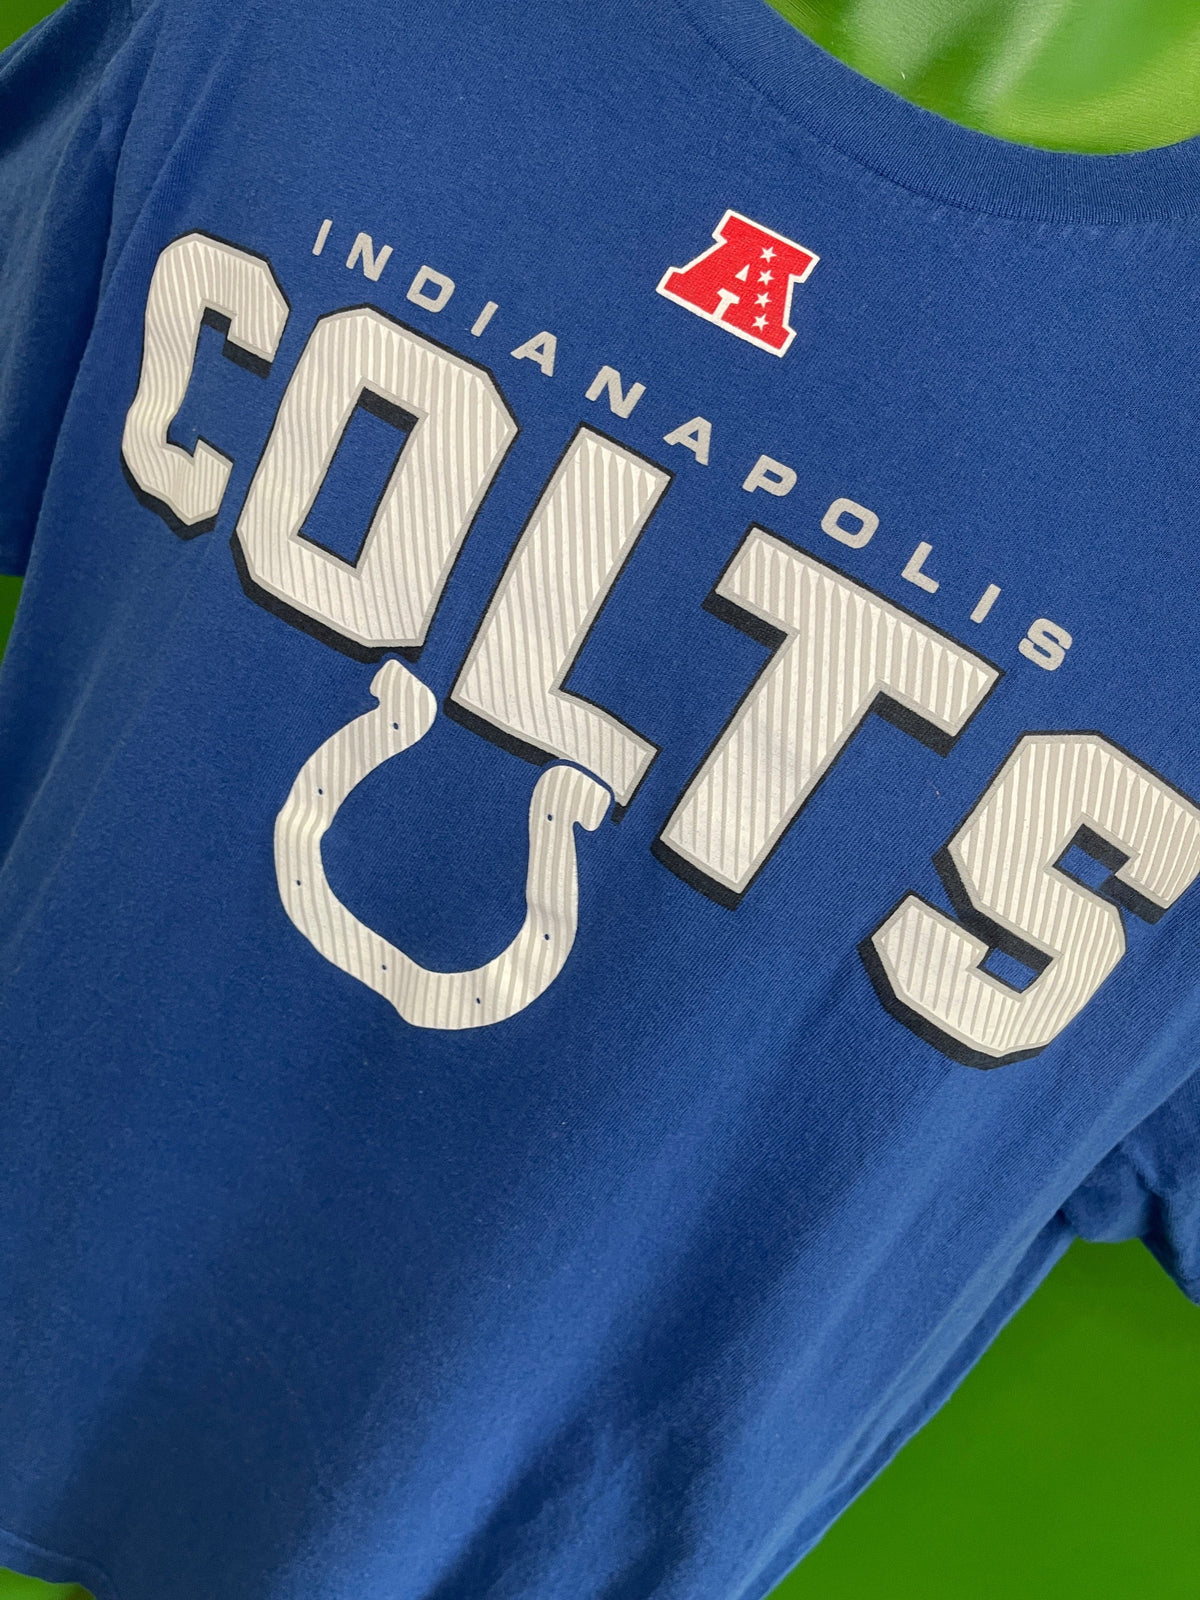 NFL Indianapolis Colts 100% Cotton T-Shirt Men's Large